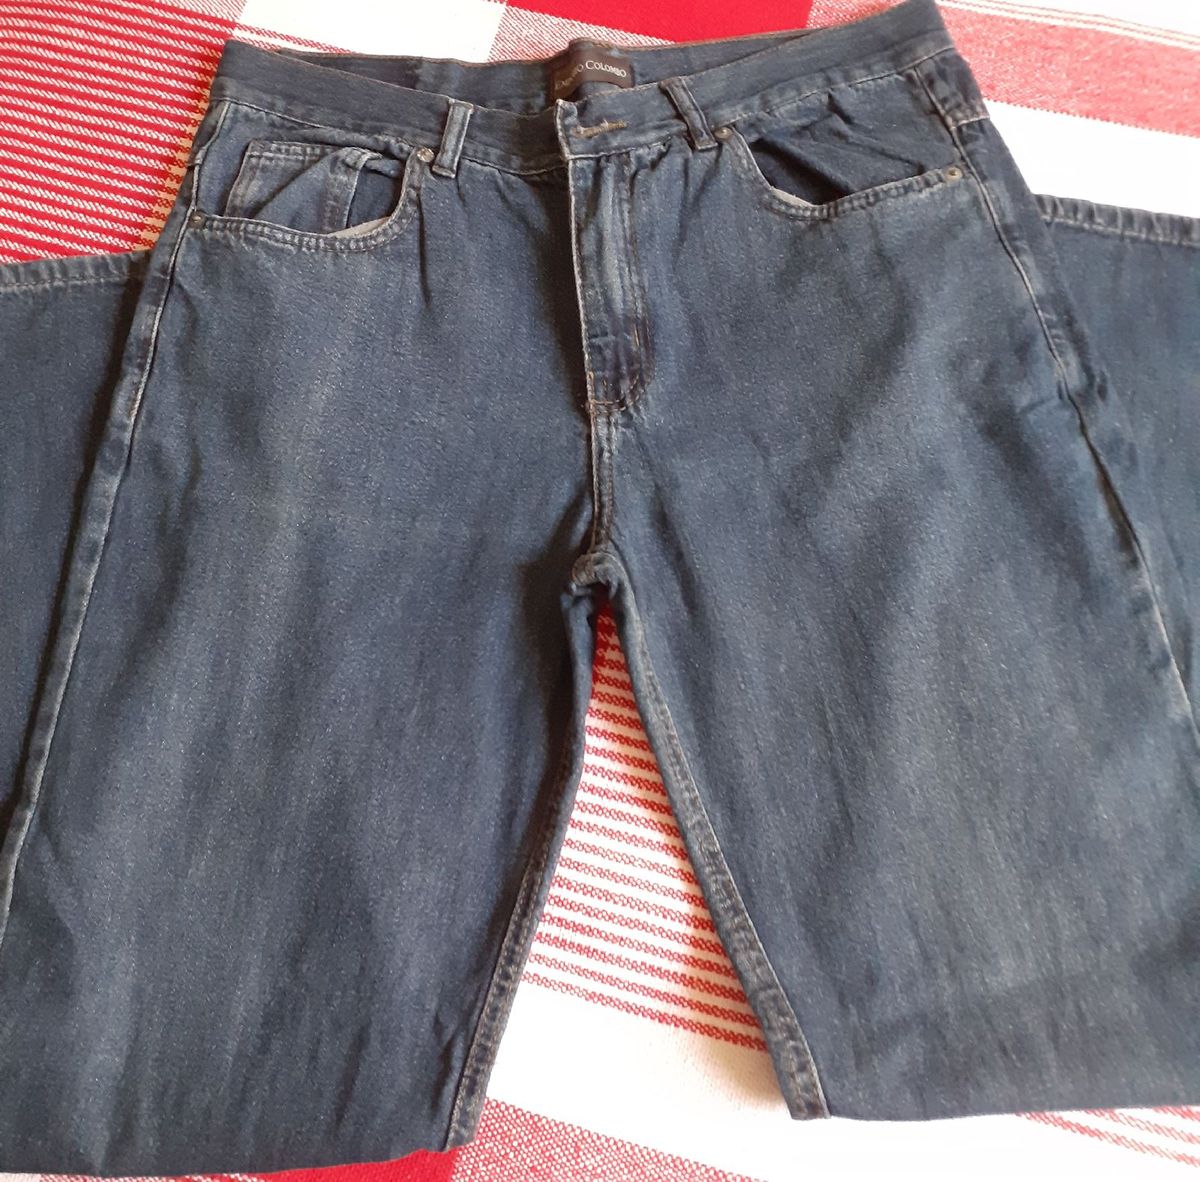 calça jeans masculina colombo